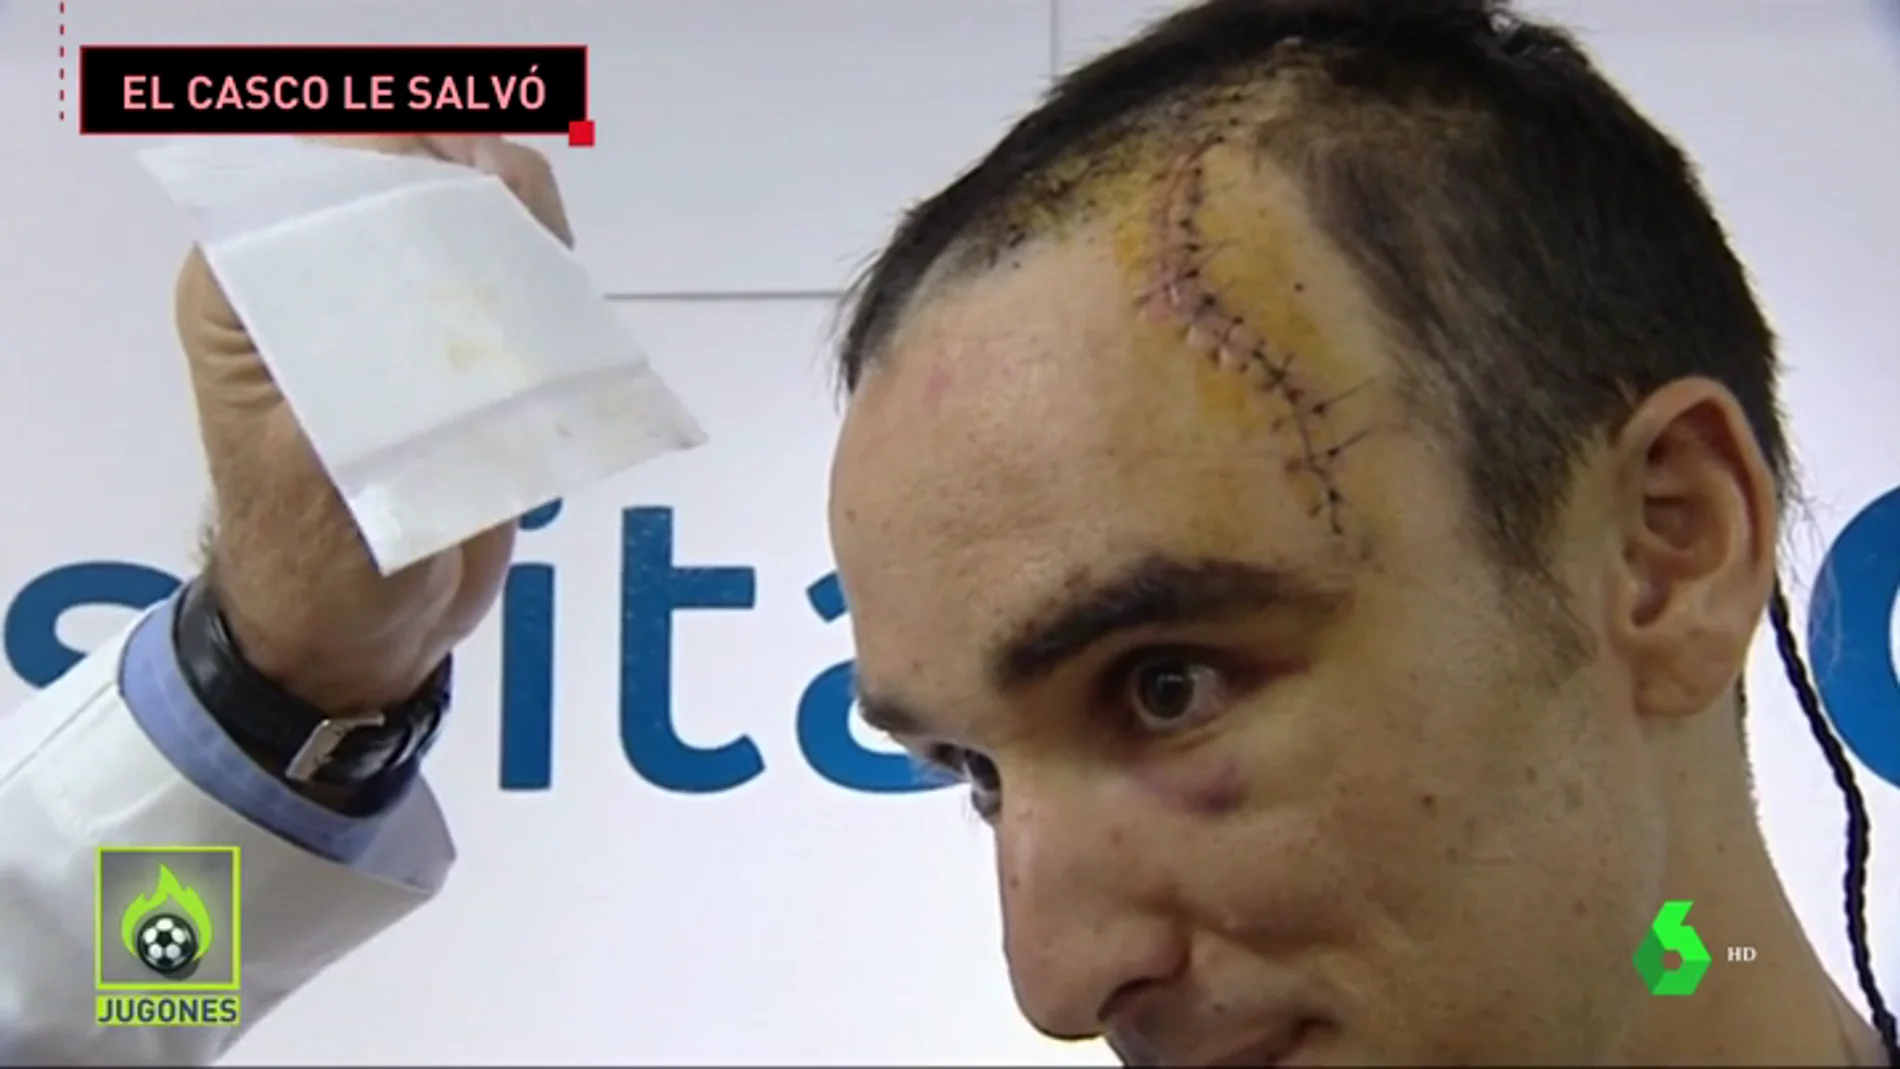 La grave caída de Luis Ángel Maté en la Vuelta a Polonia: más de 50 puntos de sutura y el casco le salvó la vida